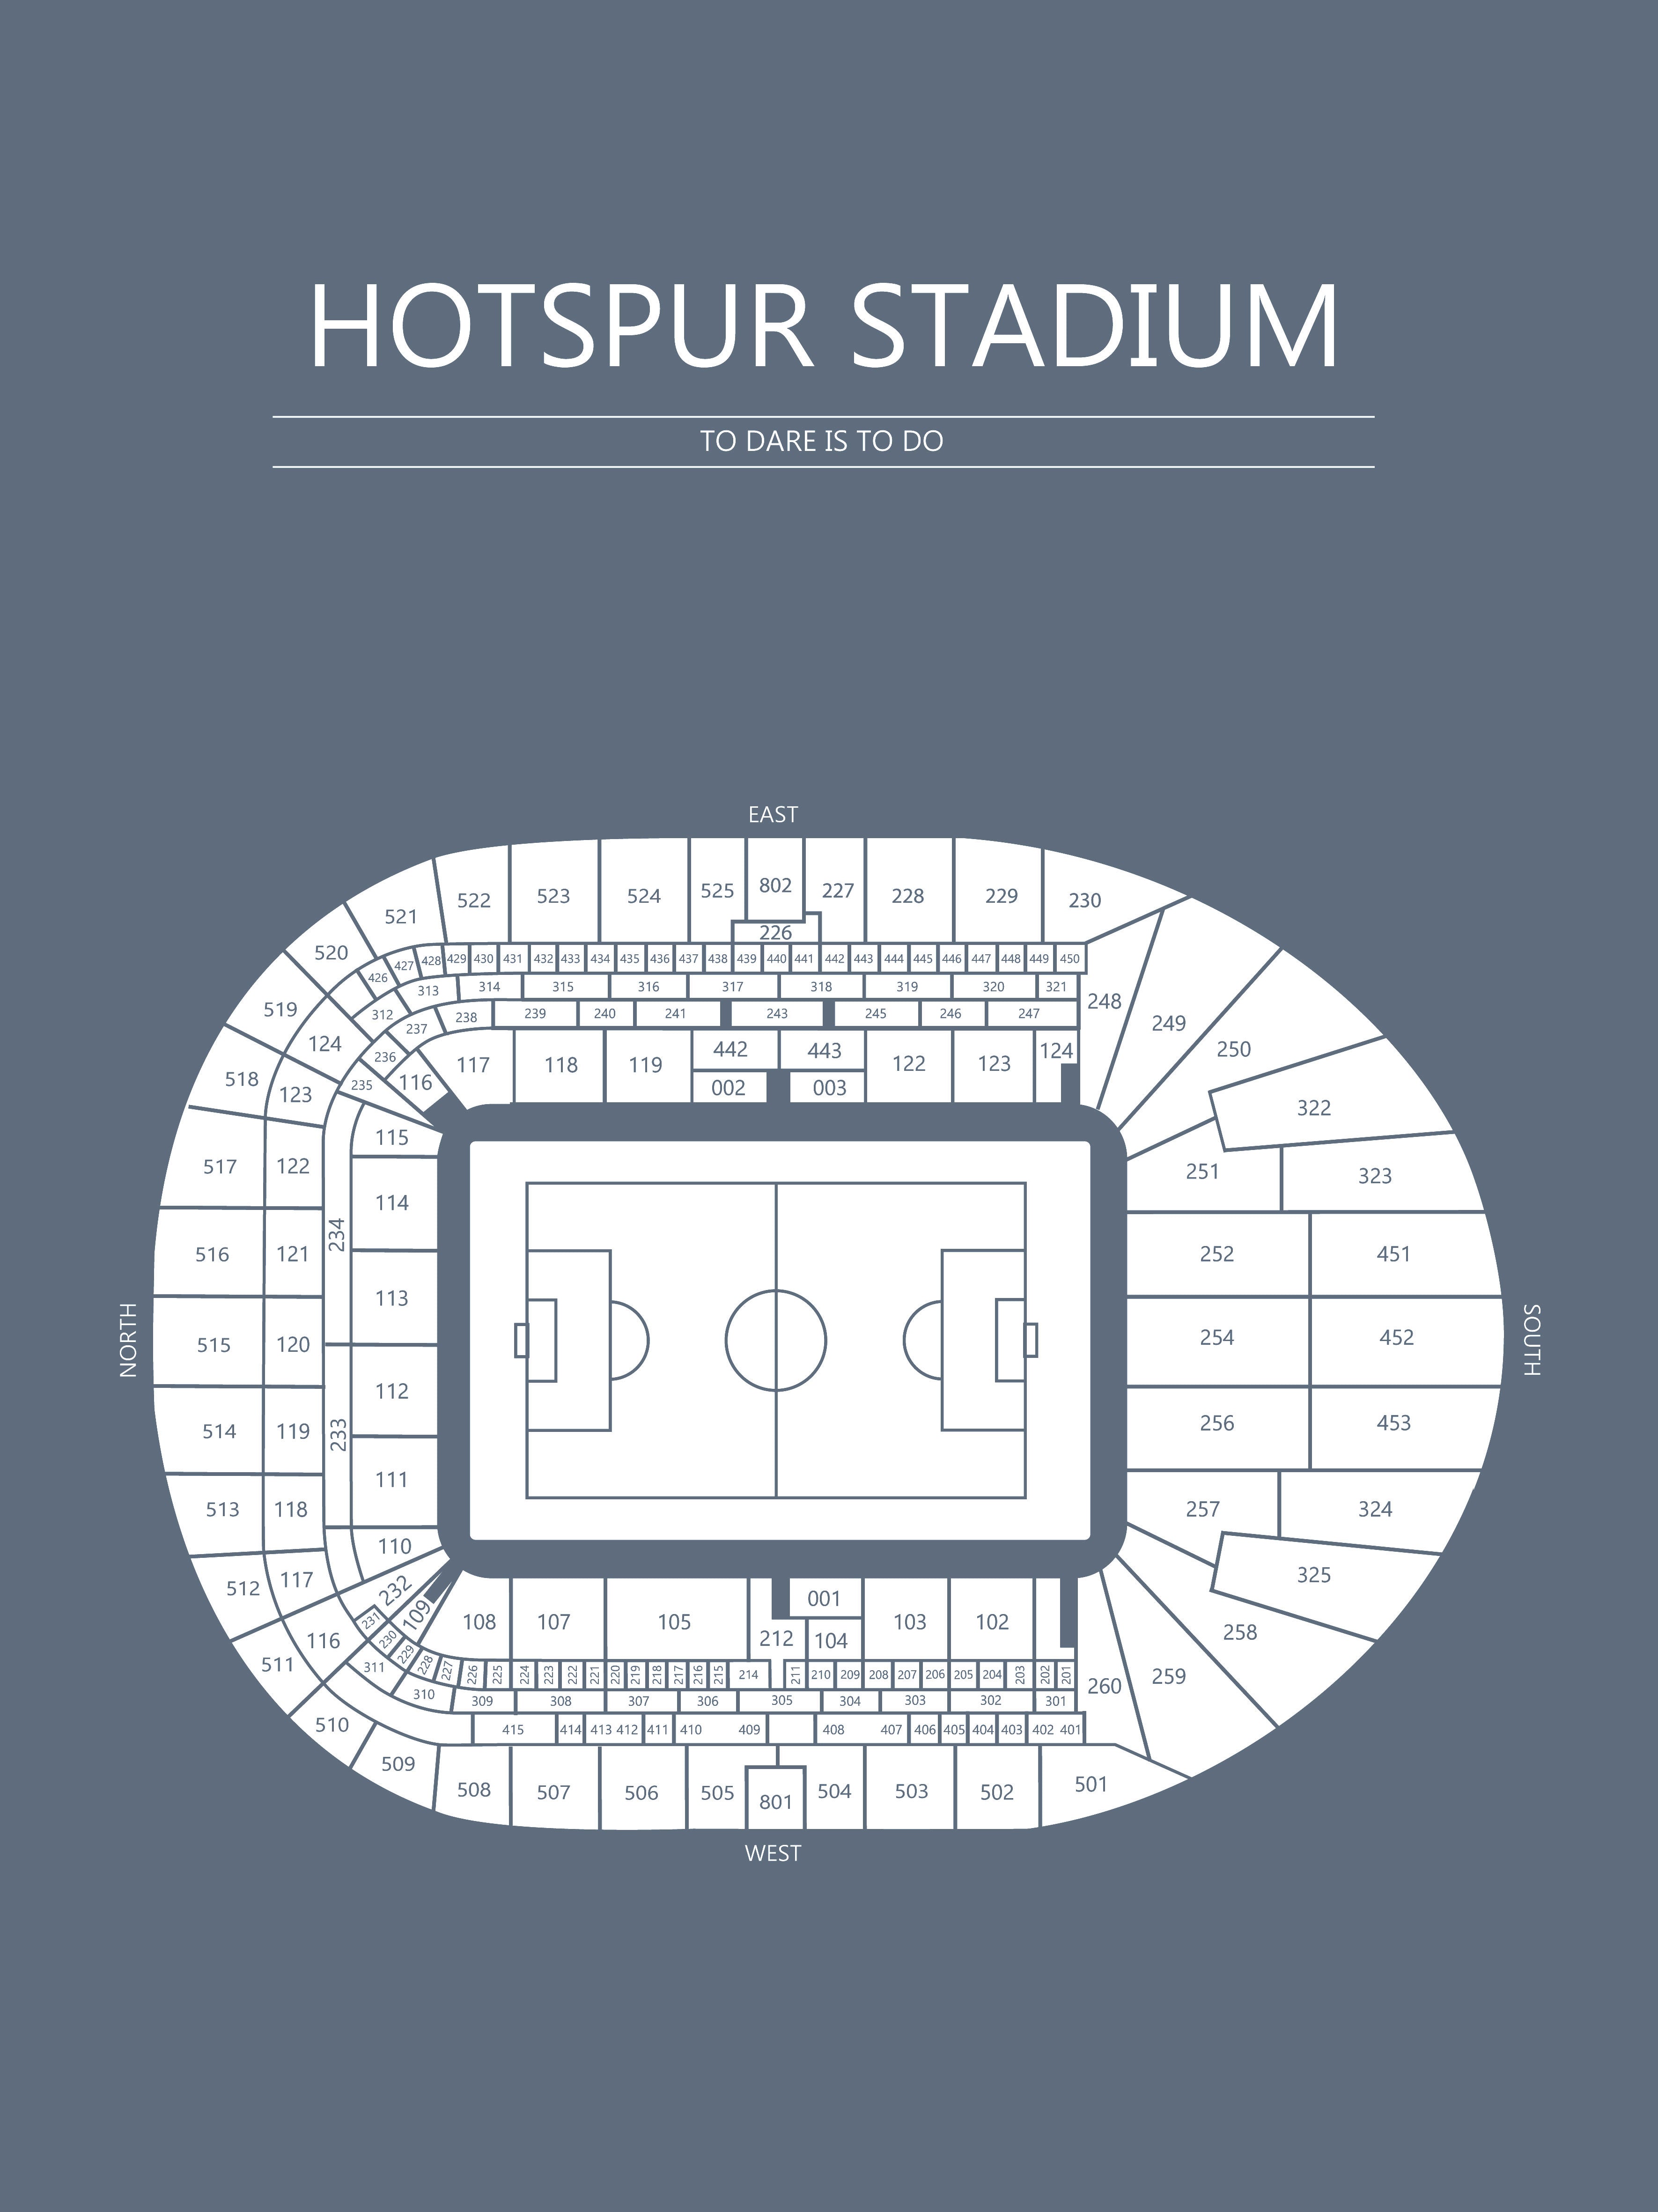 Fodbold plakat Tottenham Hotspur Stadium blågrå